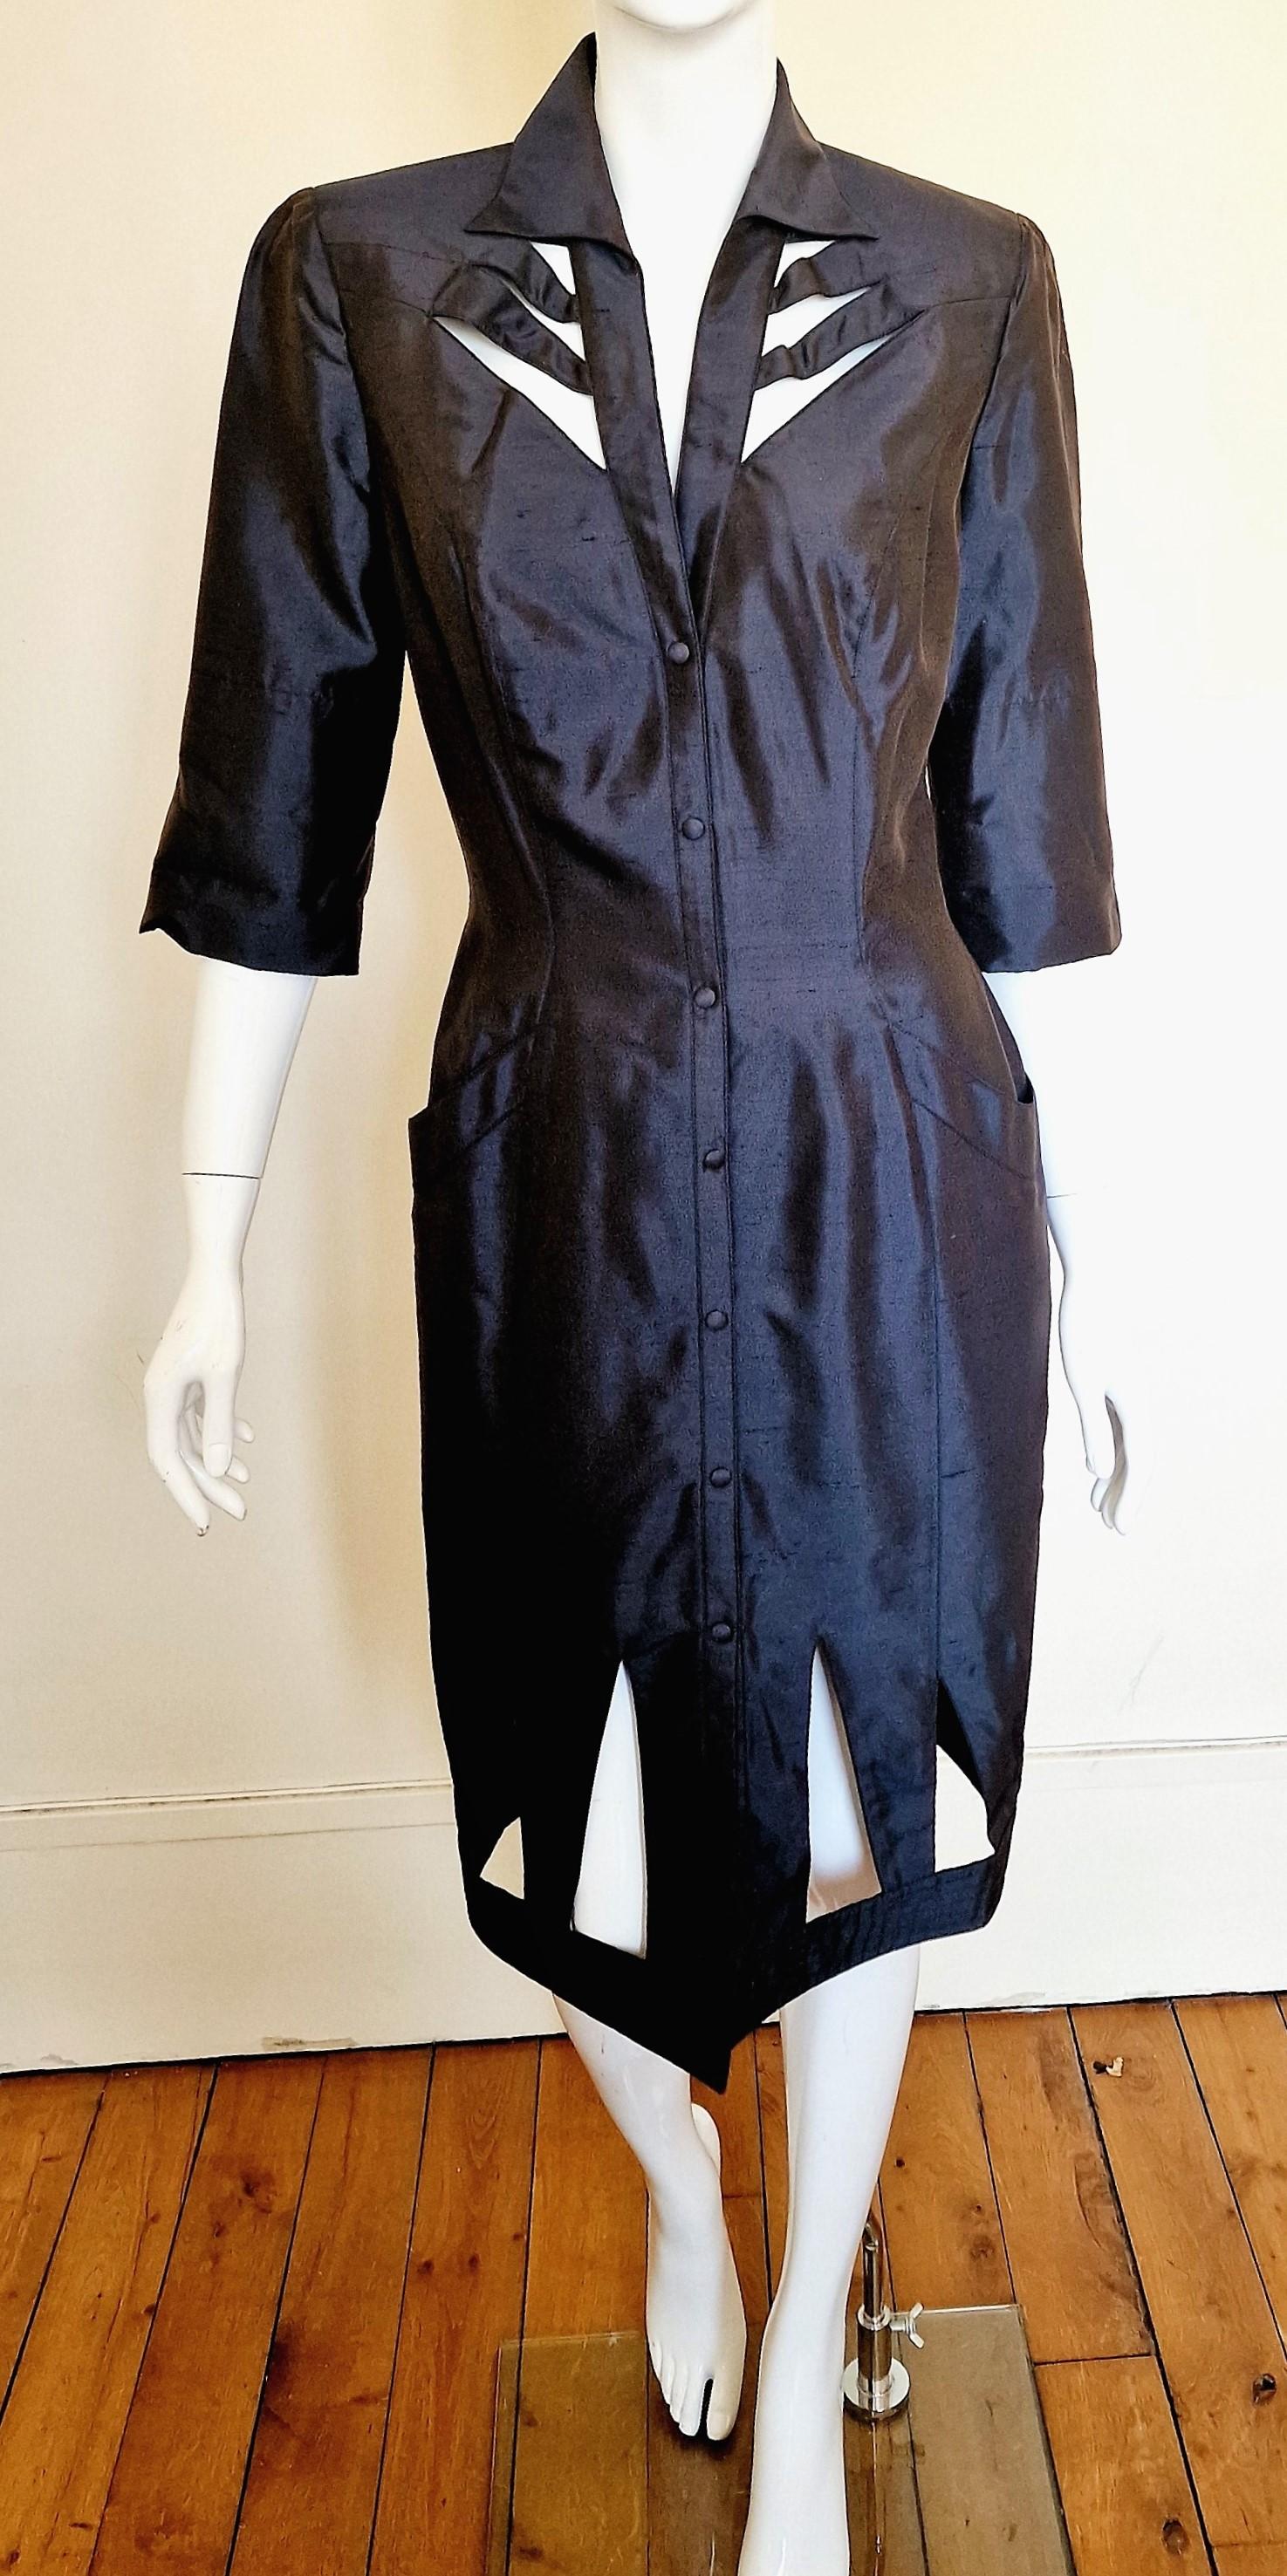 Kleid mit Ausschnitt von Thierry Mugler!
Mit Schulterpads. 
2 Taschen an der Hüfte, Wespentaille, es empashize Ihre Kurven :)
Graphit / Metallfarbe. 
Der Stoff ist 